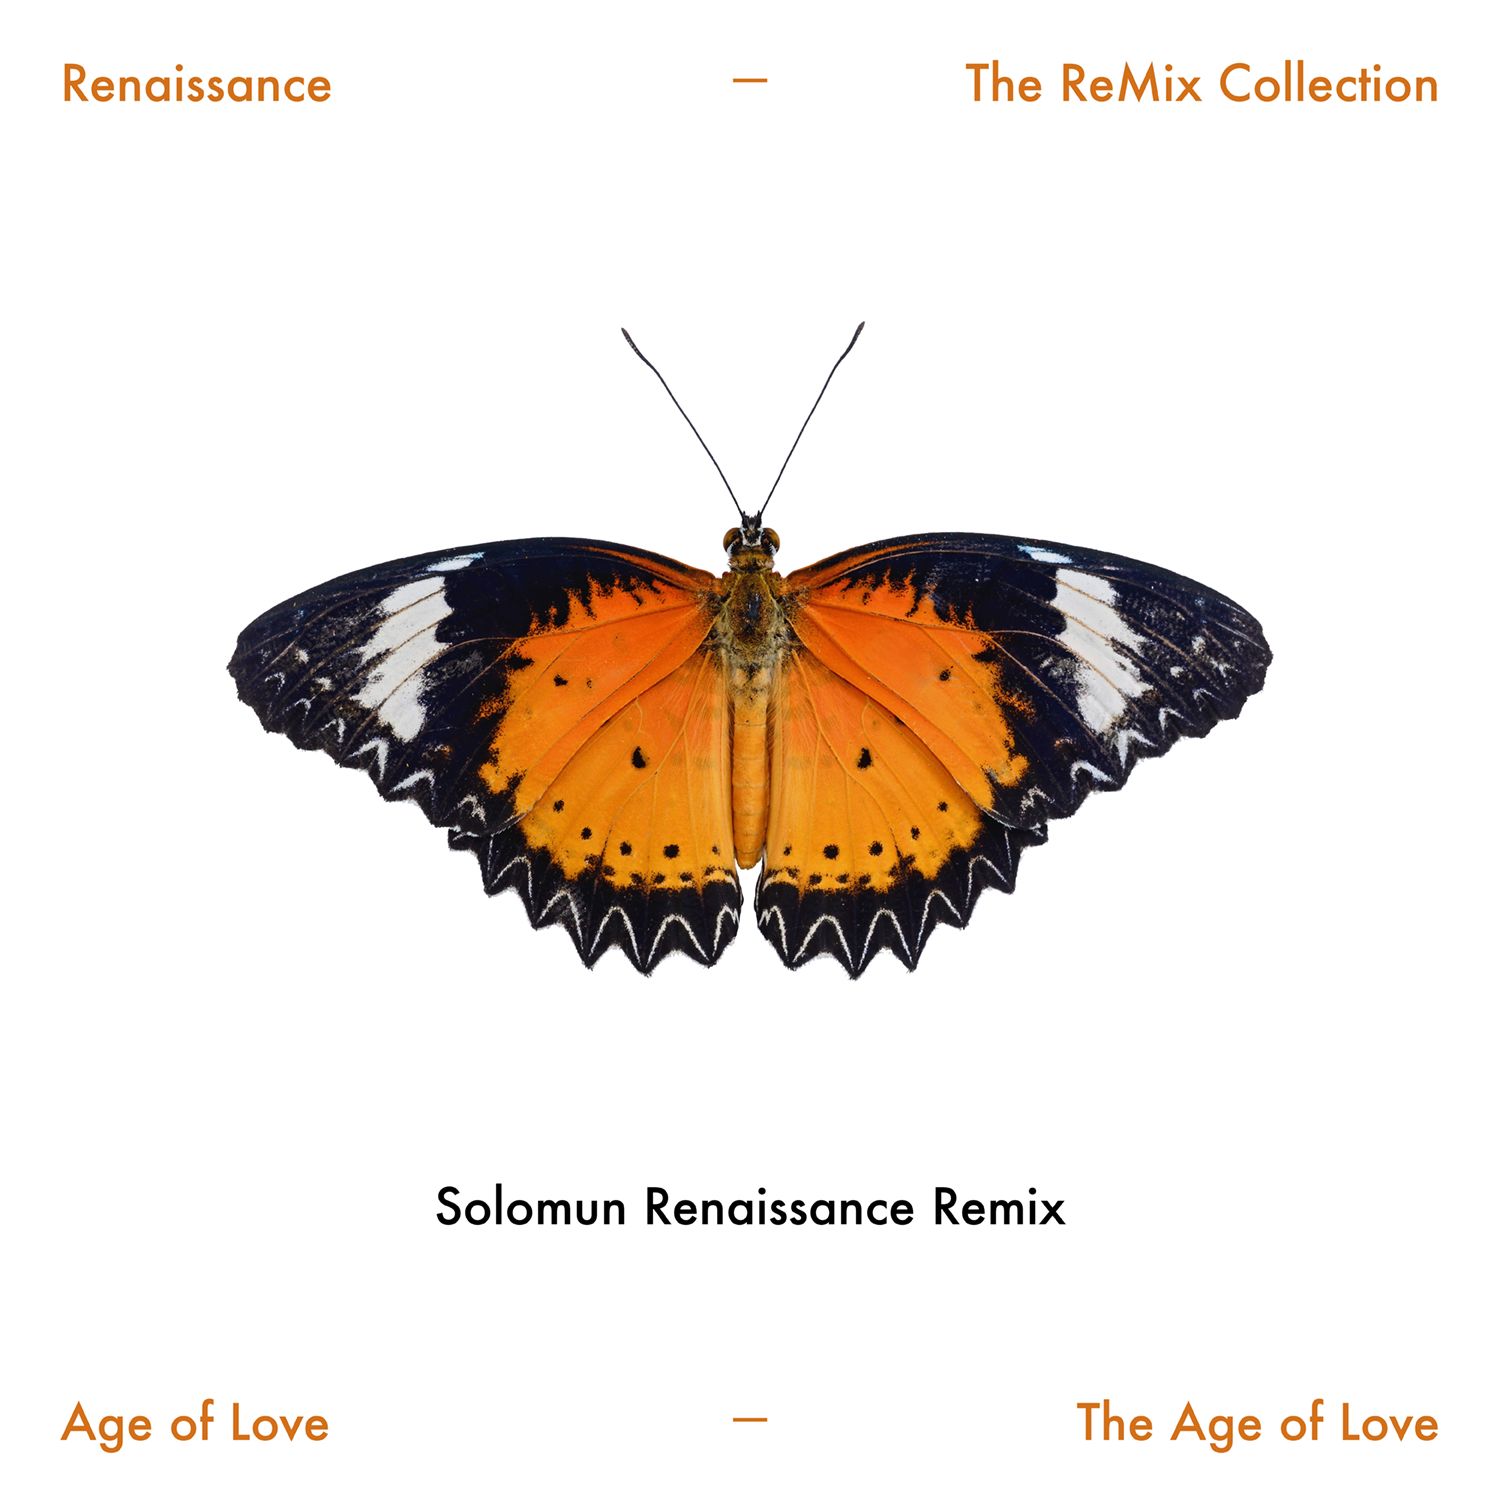 The Age of Love (Solomun Renaissance Remix Edit)